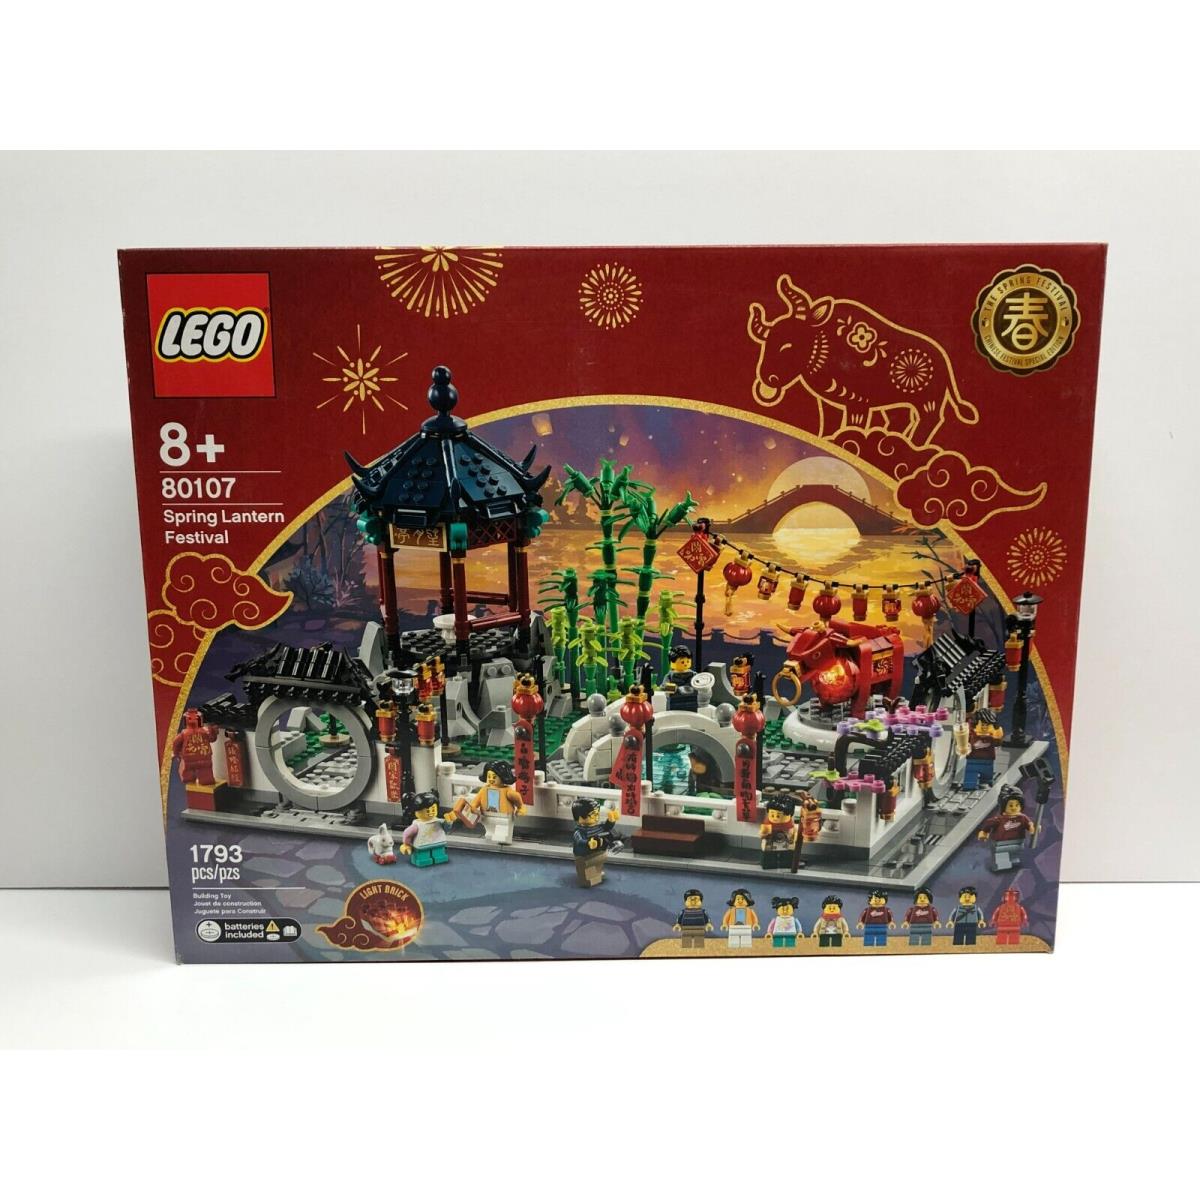 Lego 80107 Spring Lantern Festival Lunar Year 1793 Pcs